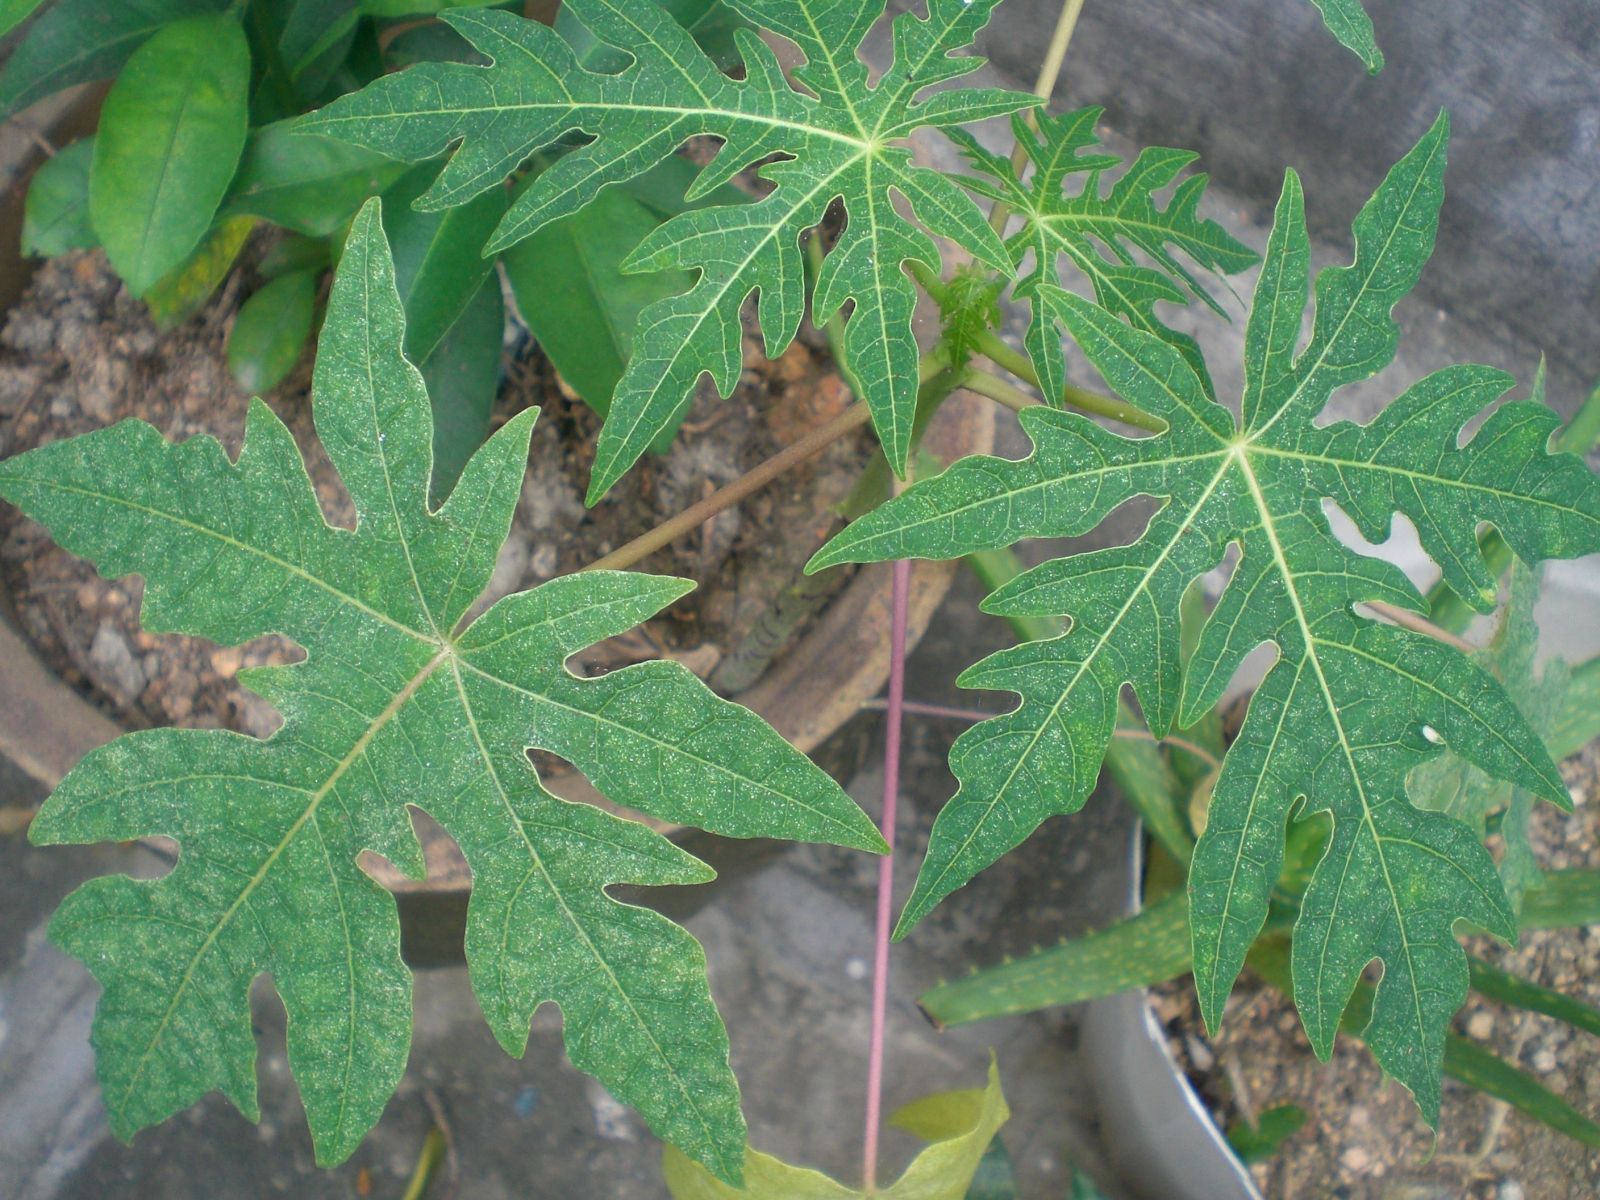 Papaya-leaves